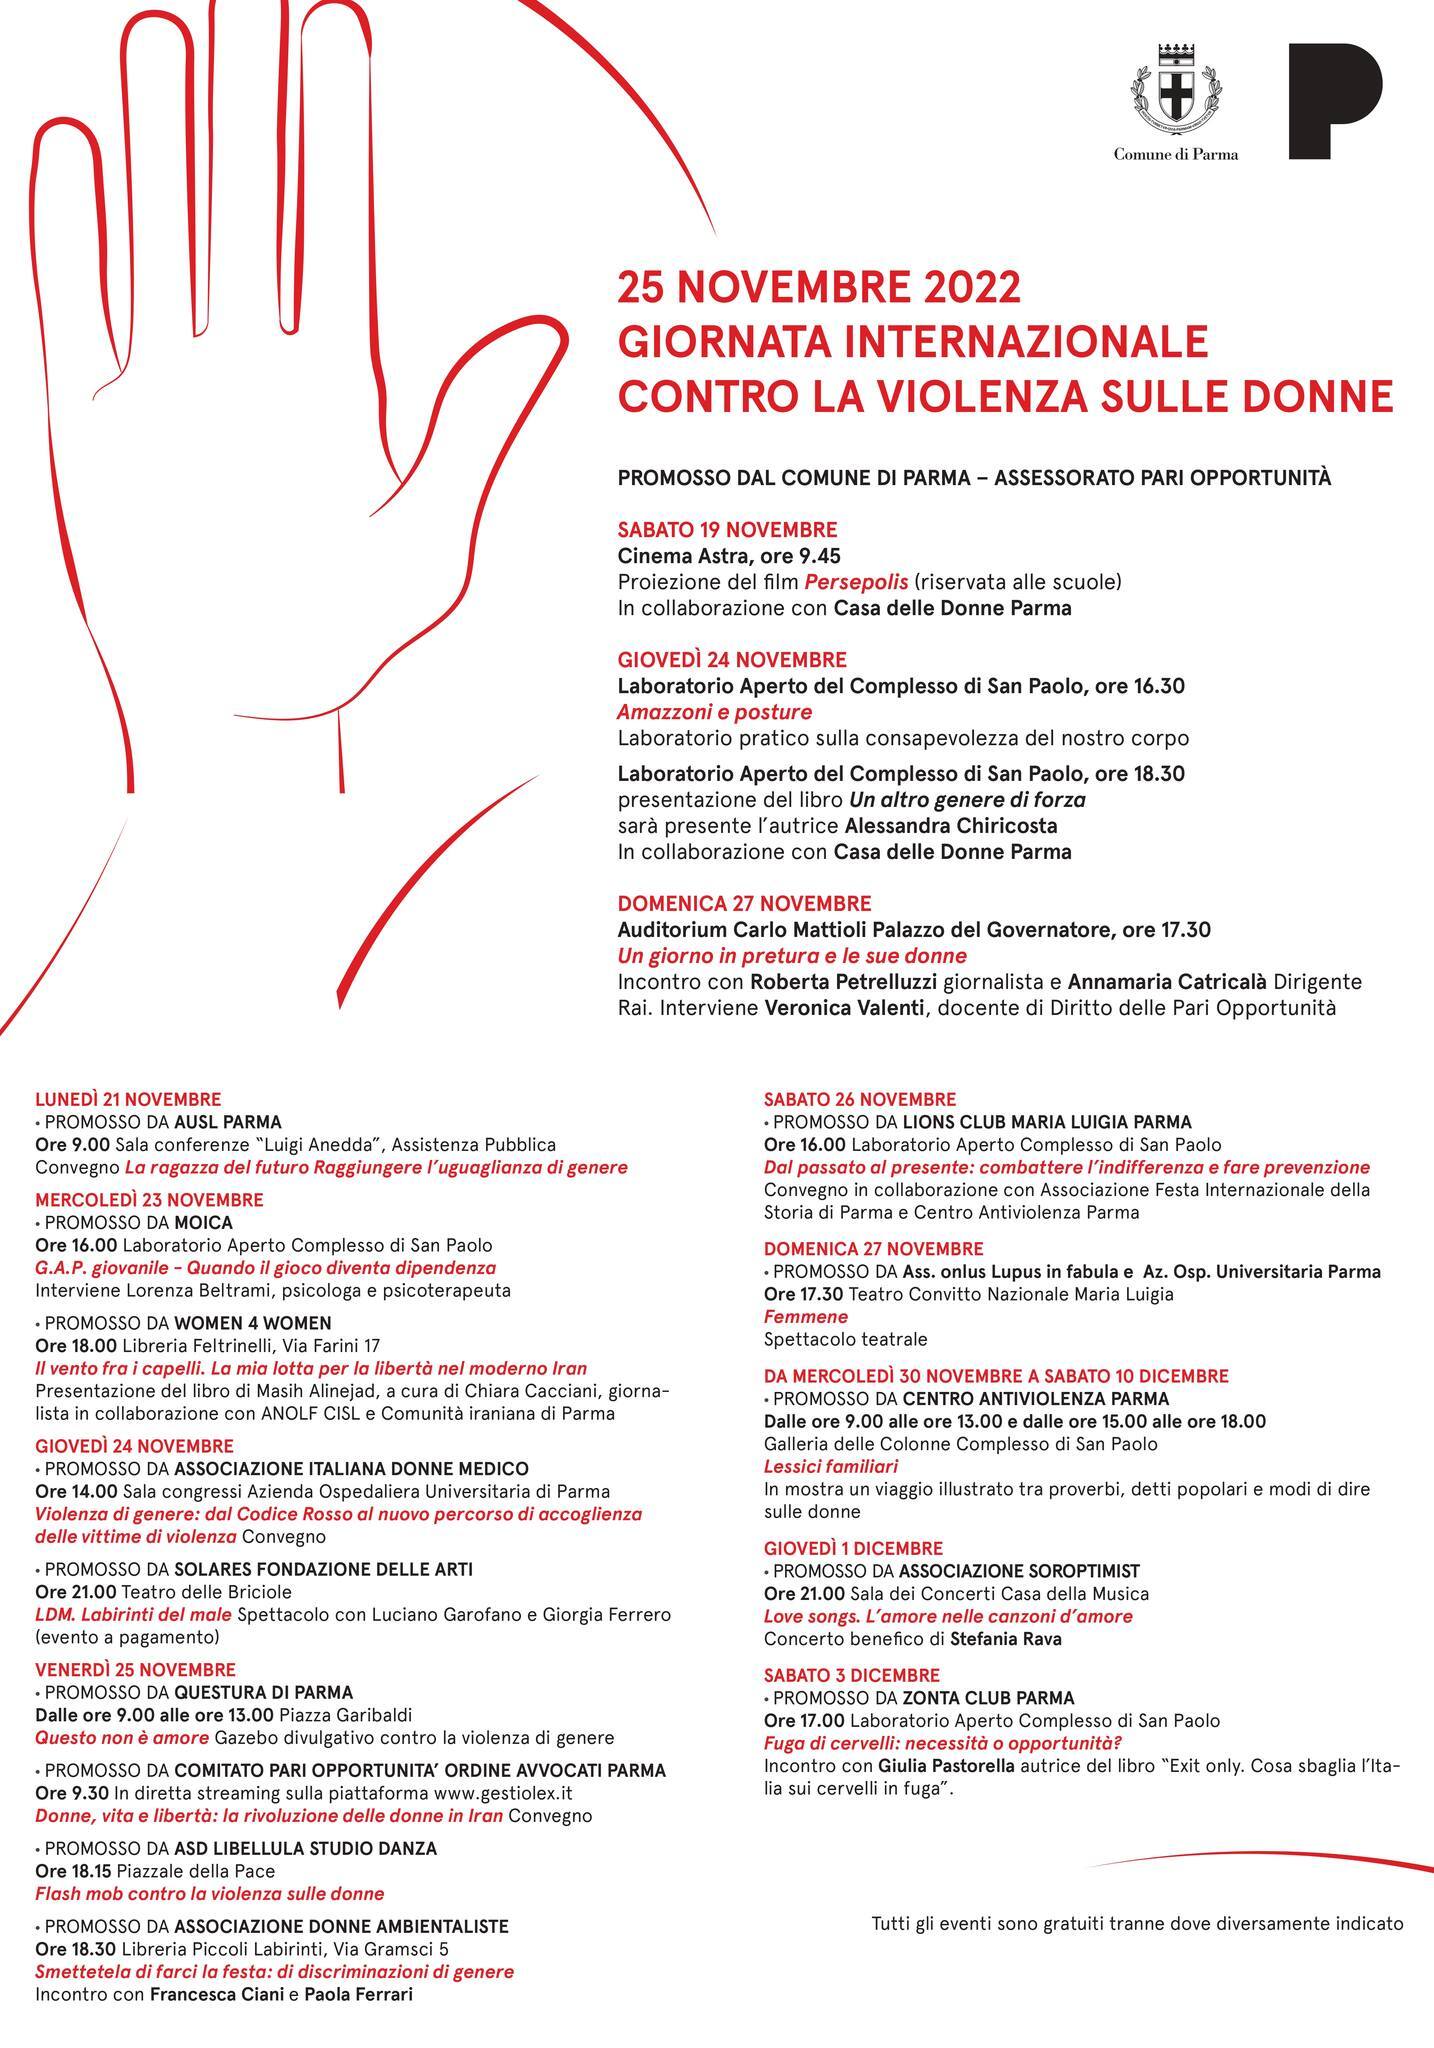 25 NOVEMBRE GIORNATA INTERNAZIONALE  CONTRO LA VIOLENZA SULLE DONNE  a Parma